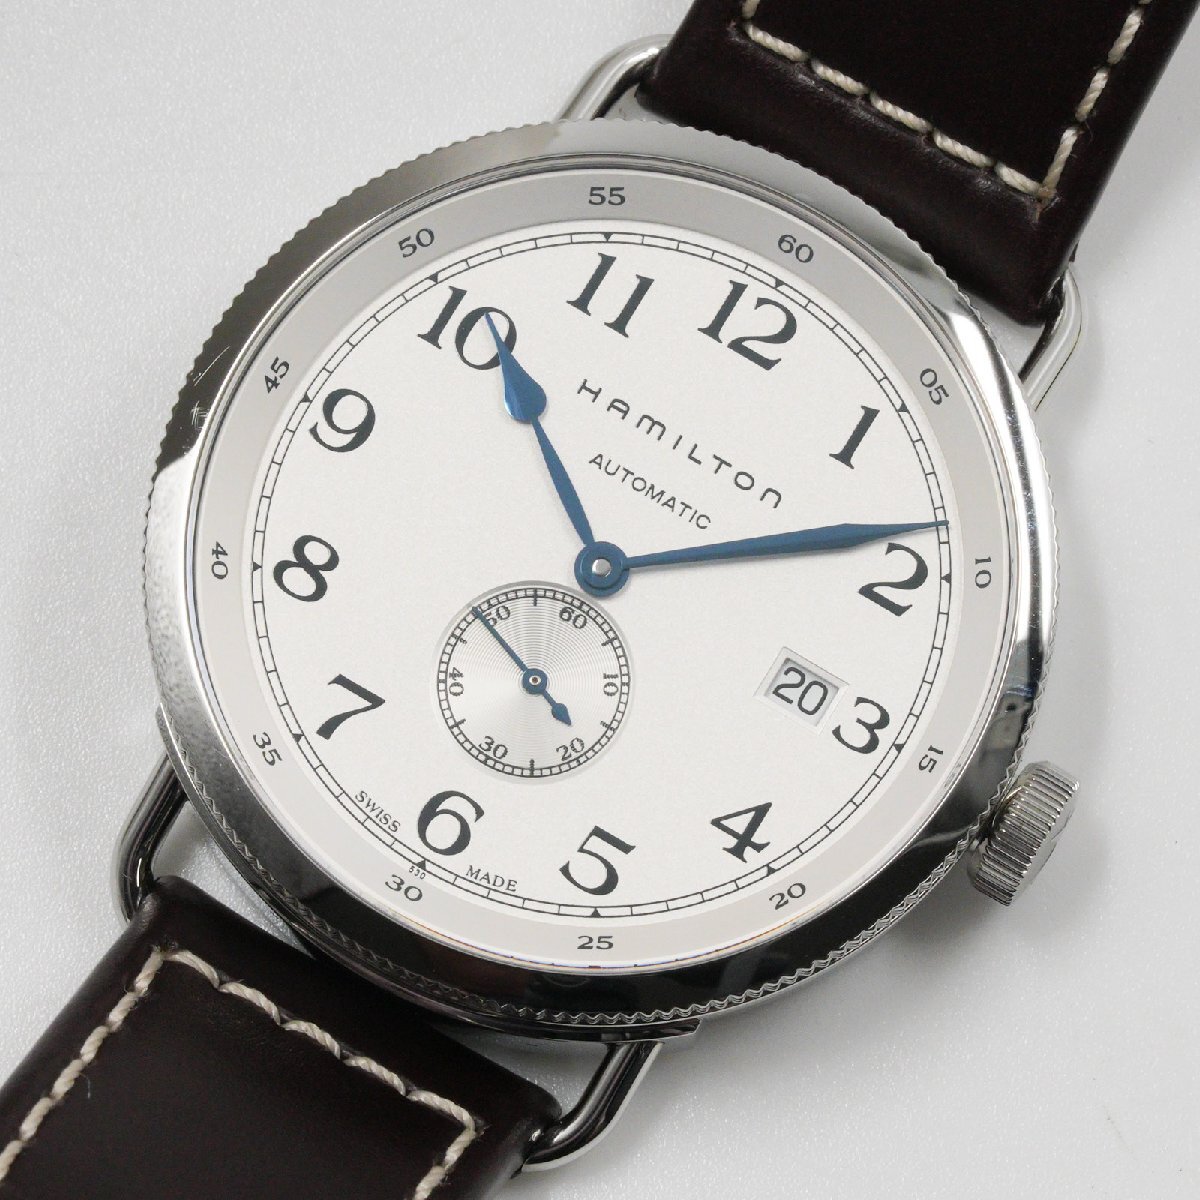 ハミルトン HAMILTON 腕時計 カーキ ネイビー パイオニア H78465553 メンズ 自動巻 中古 美品 [質イコー]_画像1